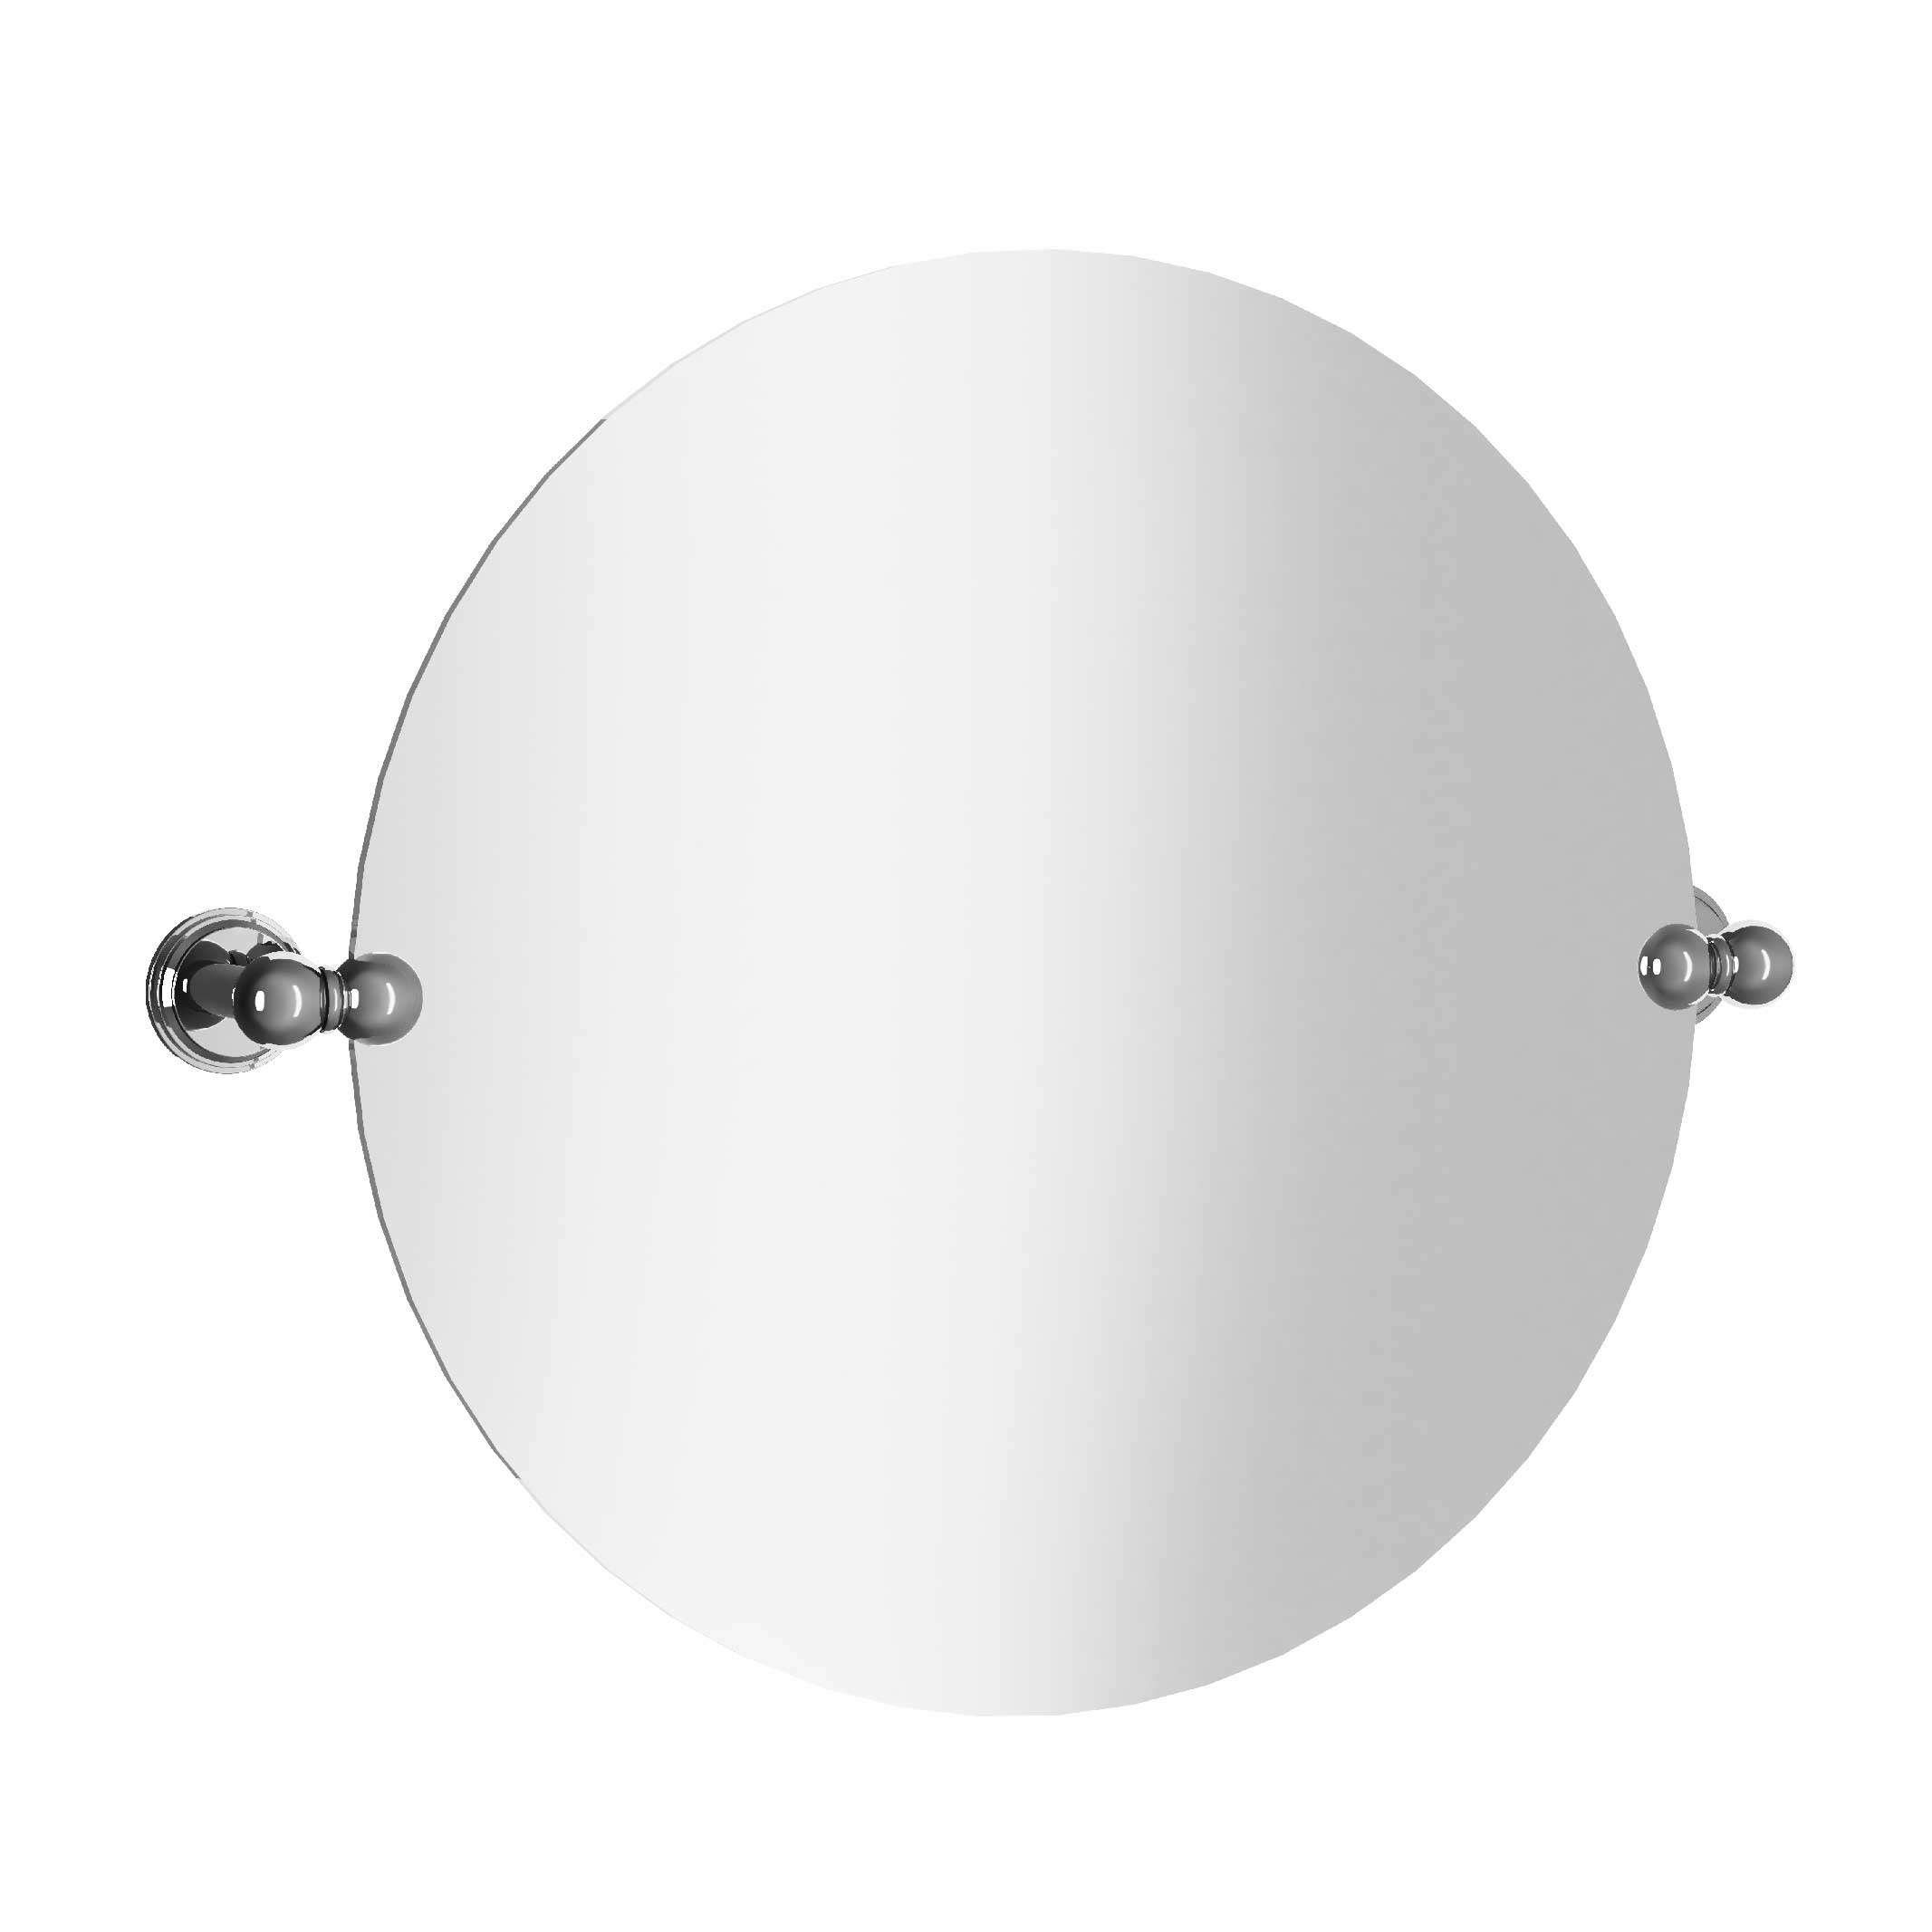 M60-536 Round mirror